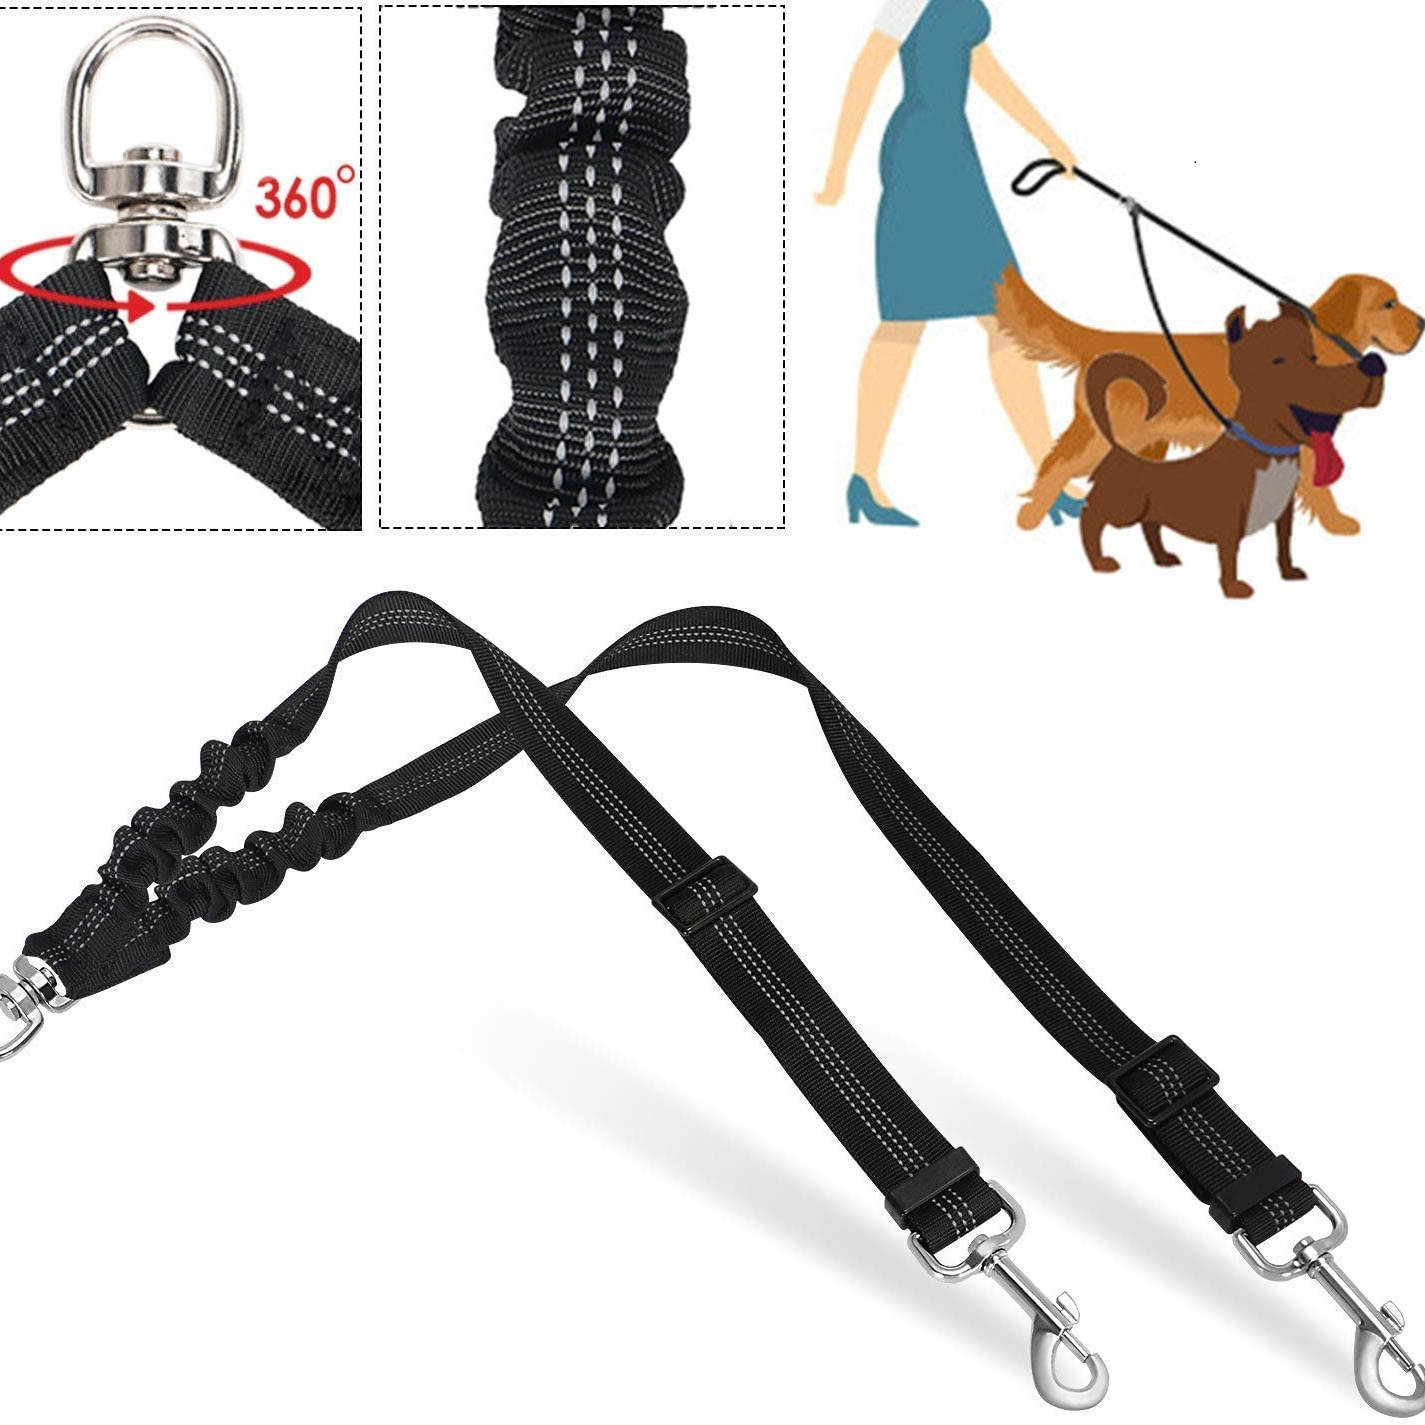 Laisse double pour chien, double ceinture de sécurité réglable pour animal  domestique avec bande élastique et réfléchissante pour 2 chiens